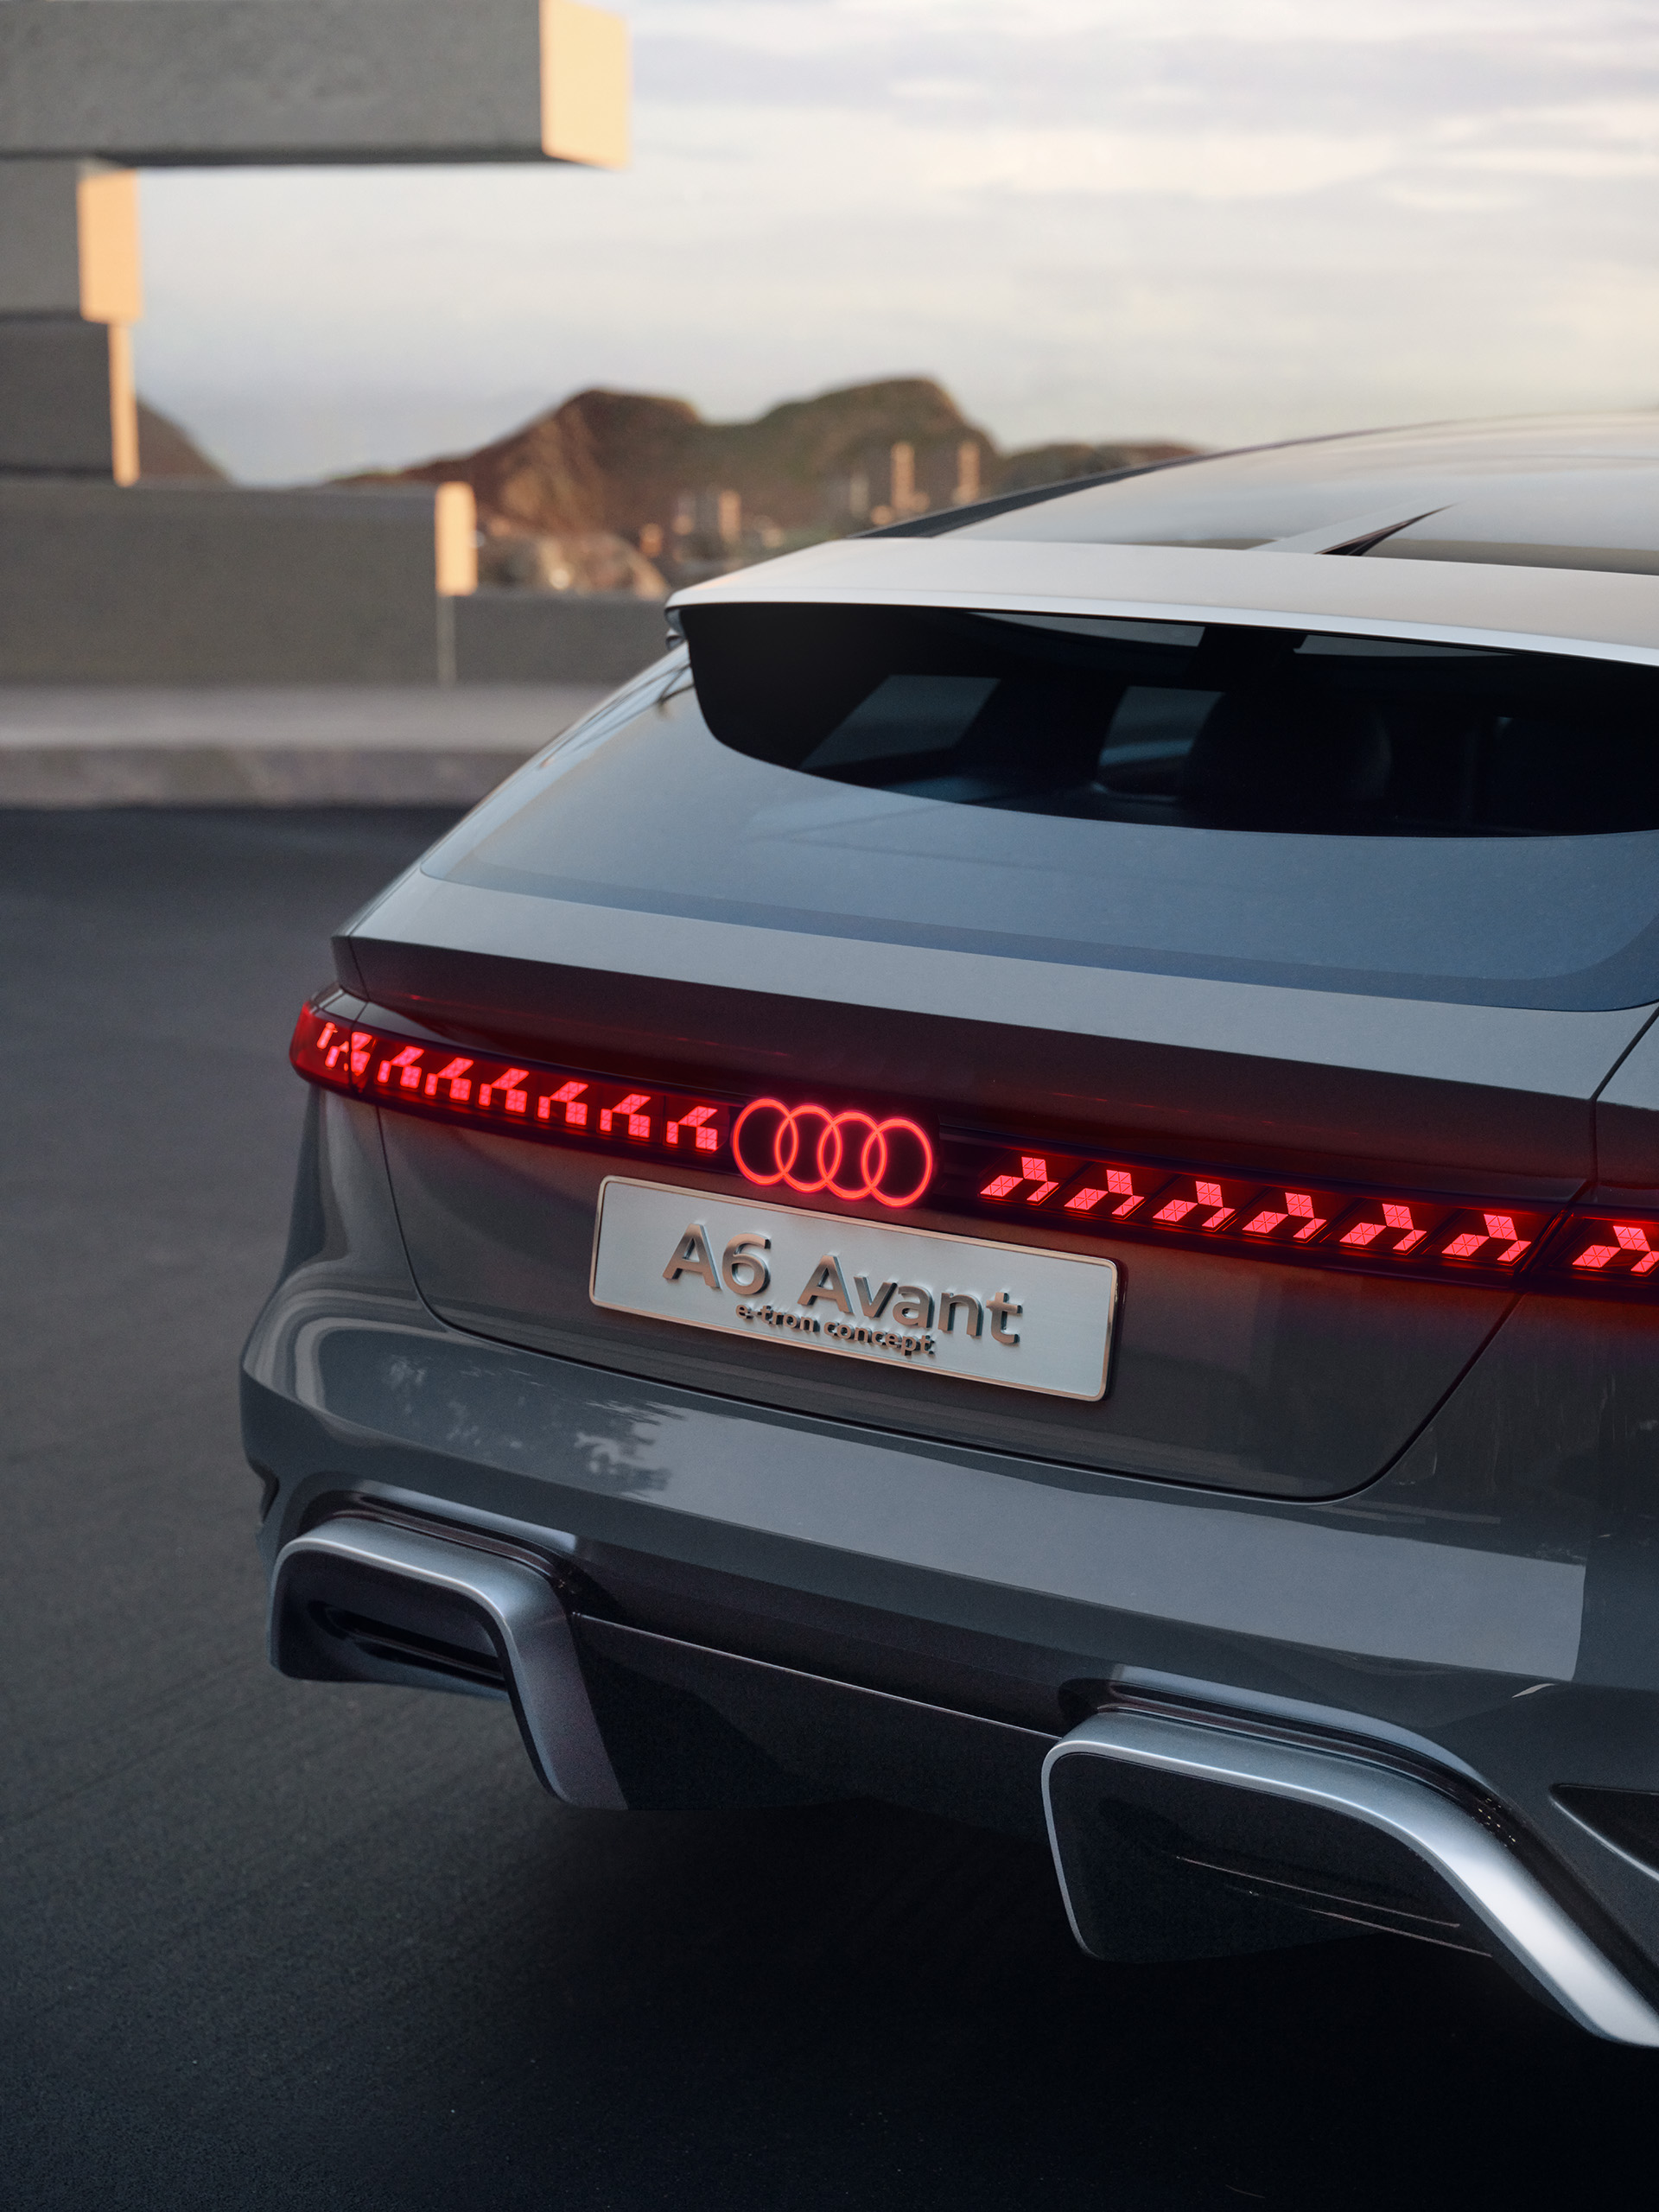 Vista trasera del Audi A6 Avant e-tron concept con la franja luminosa continua.